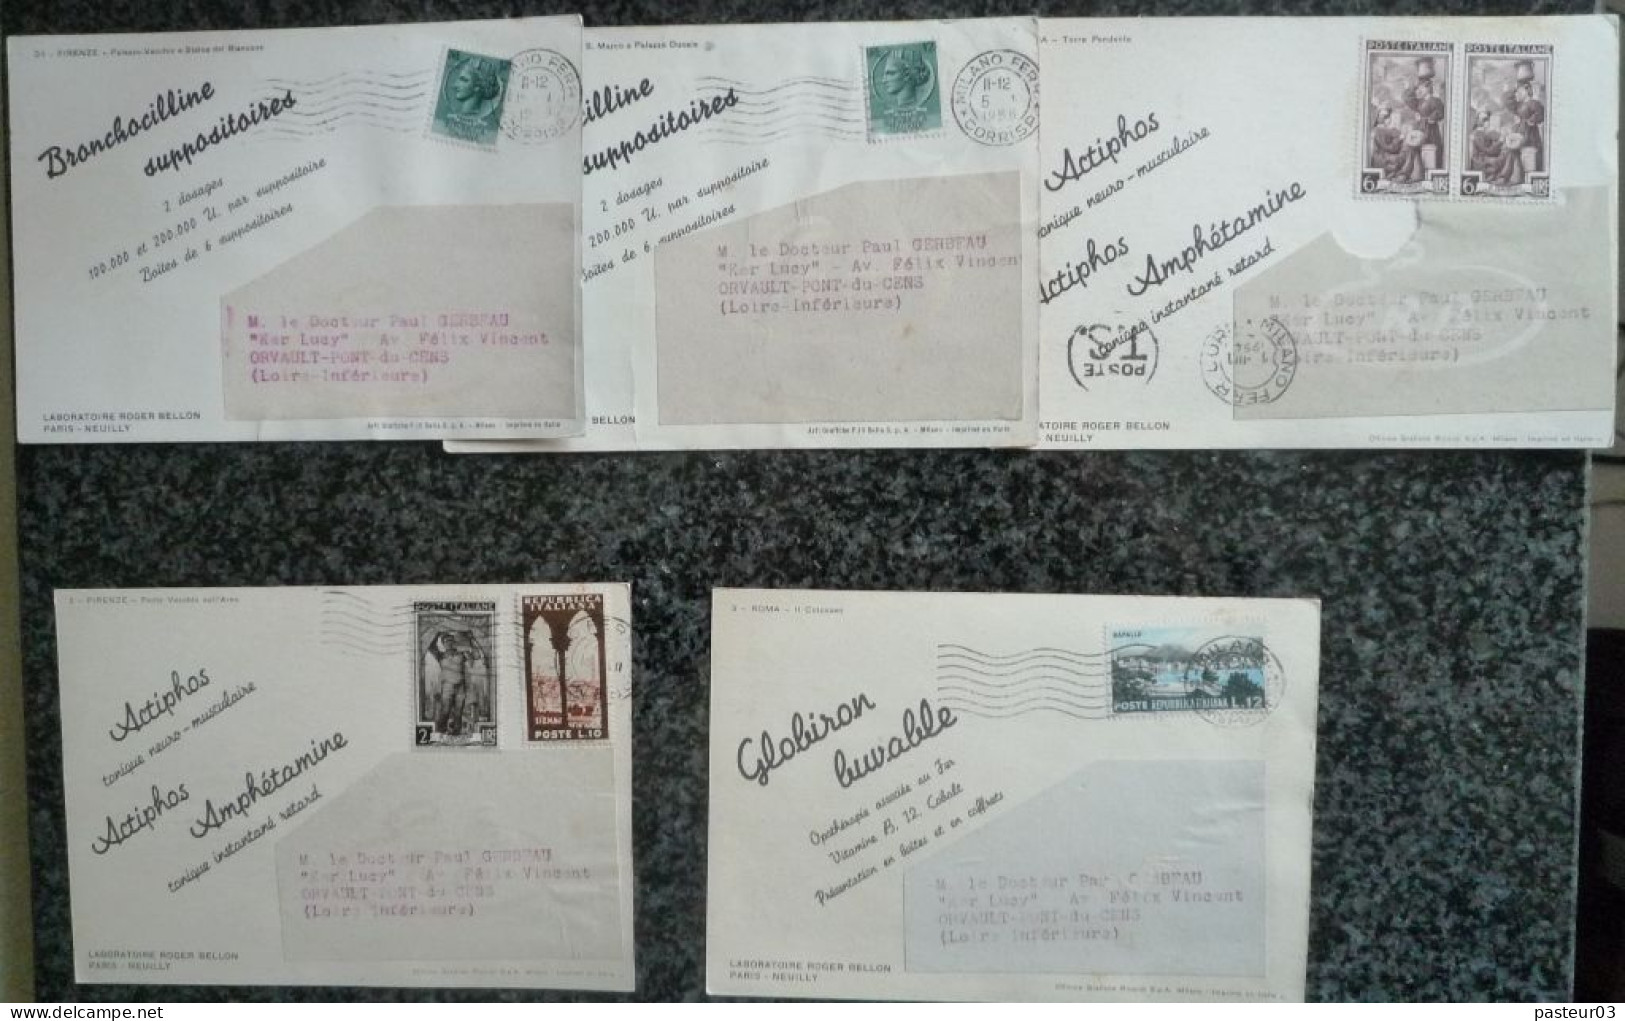 Lot De 95 Cartes Postales Laboratoires Roger BELLON Paris Neuilly Vues D'Italie - Pubblicitari